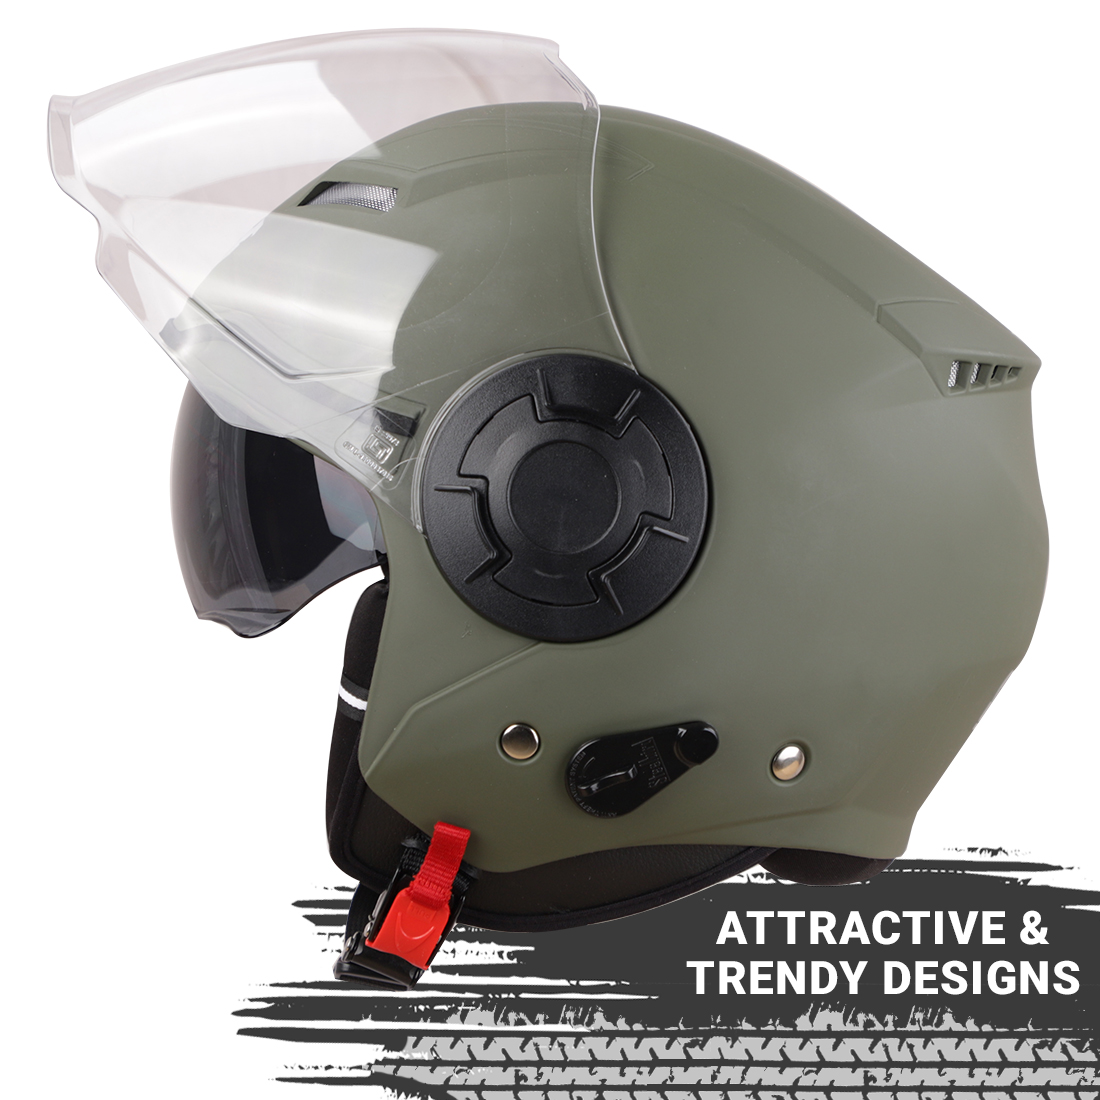 Steelbird GT ISI Certified Open Face Helmet For Men And Women With Inner Sun Shield ( Dual Visor Mechanism ) (Matt Battle Green)